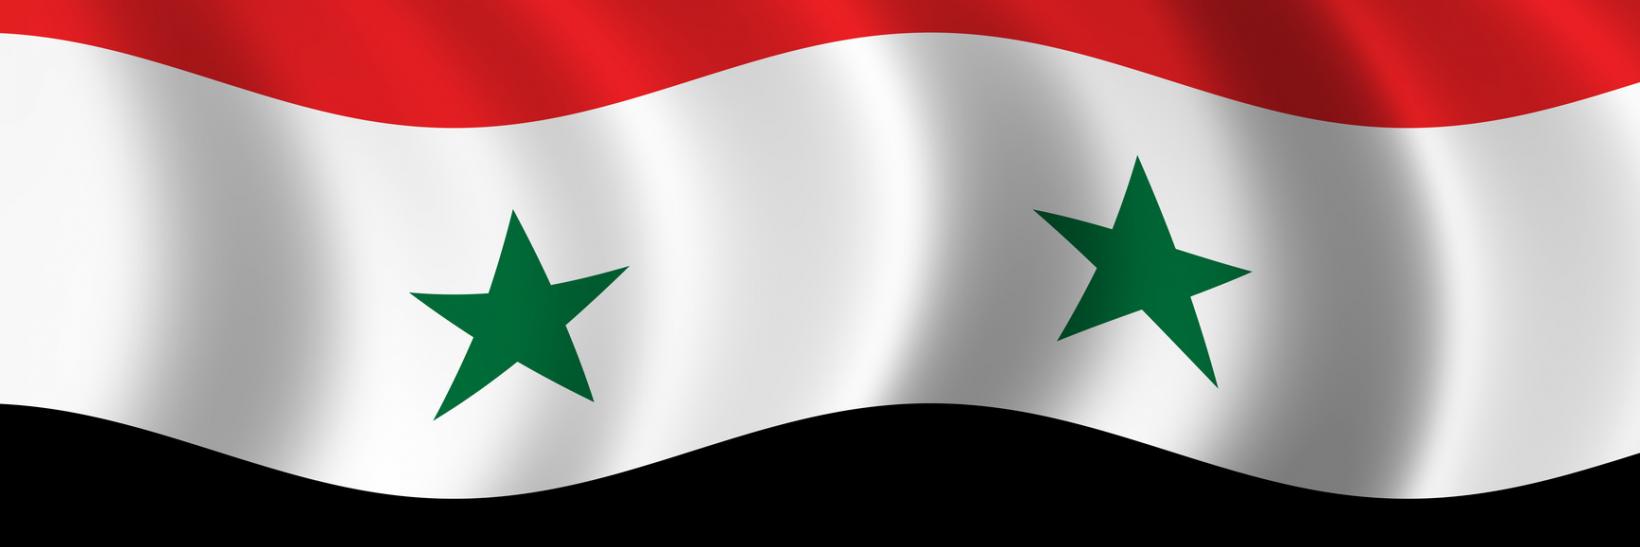 Syrian flag. 